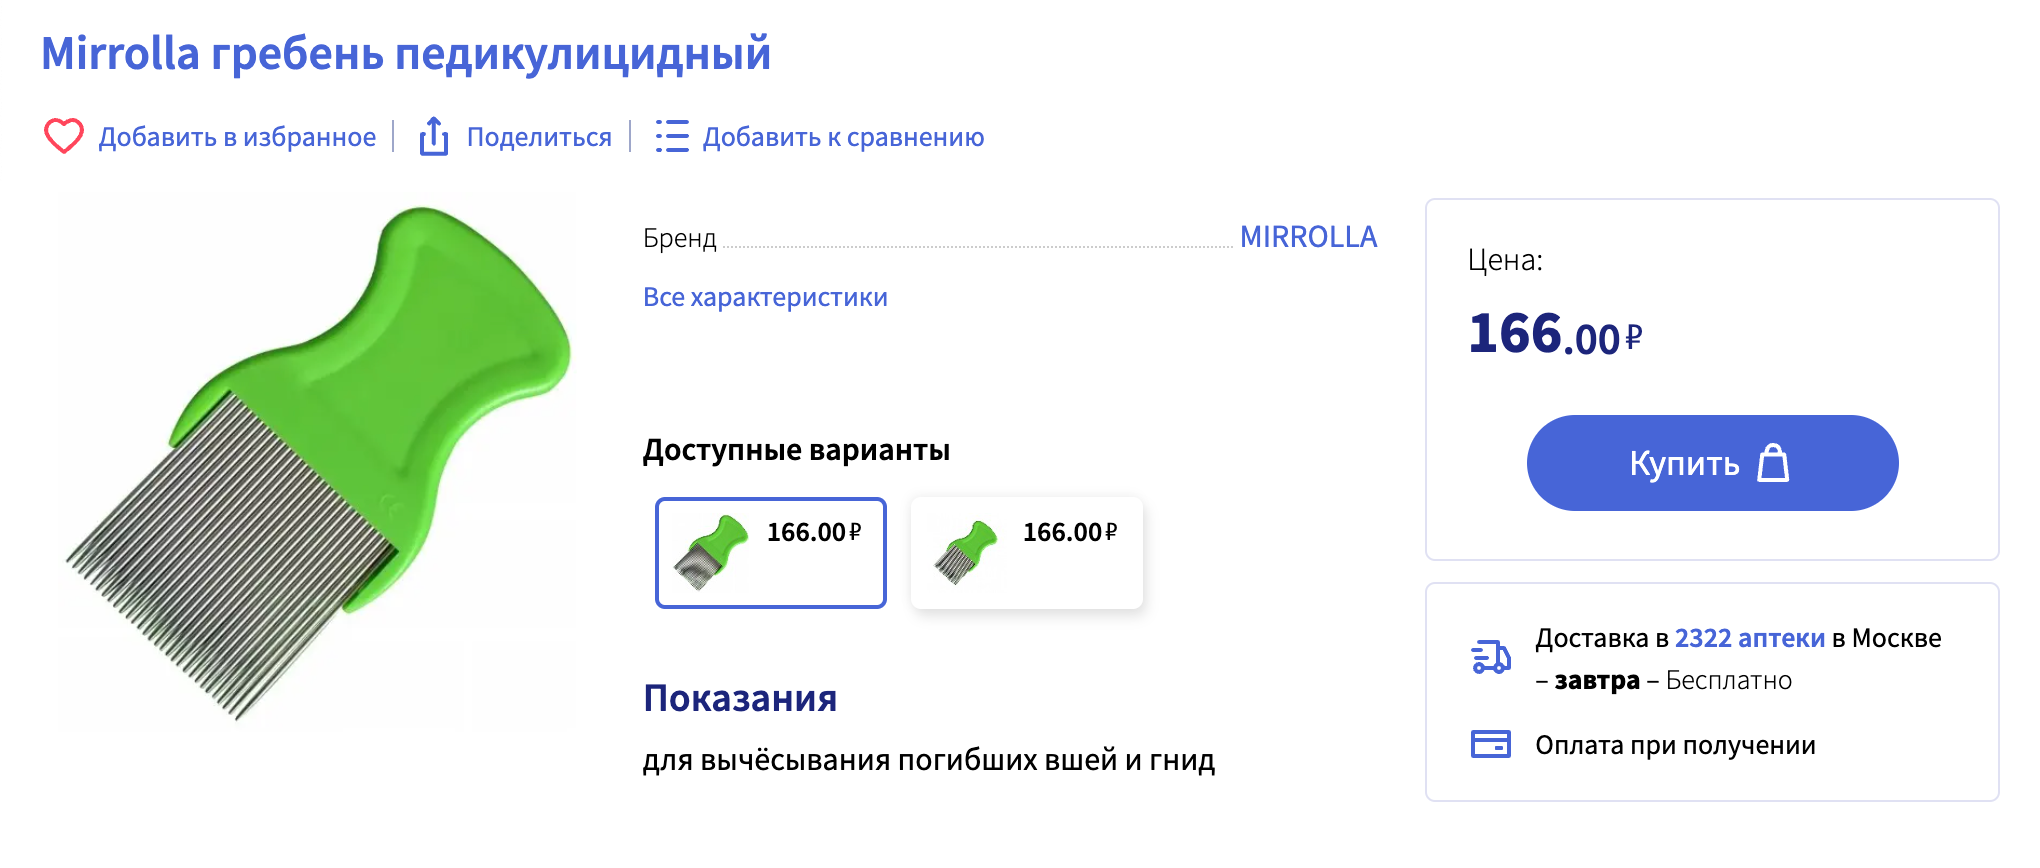 В аптеках можно купить специальный гребень для вычесывания вшей. Источник: apteka.ru